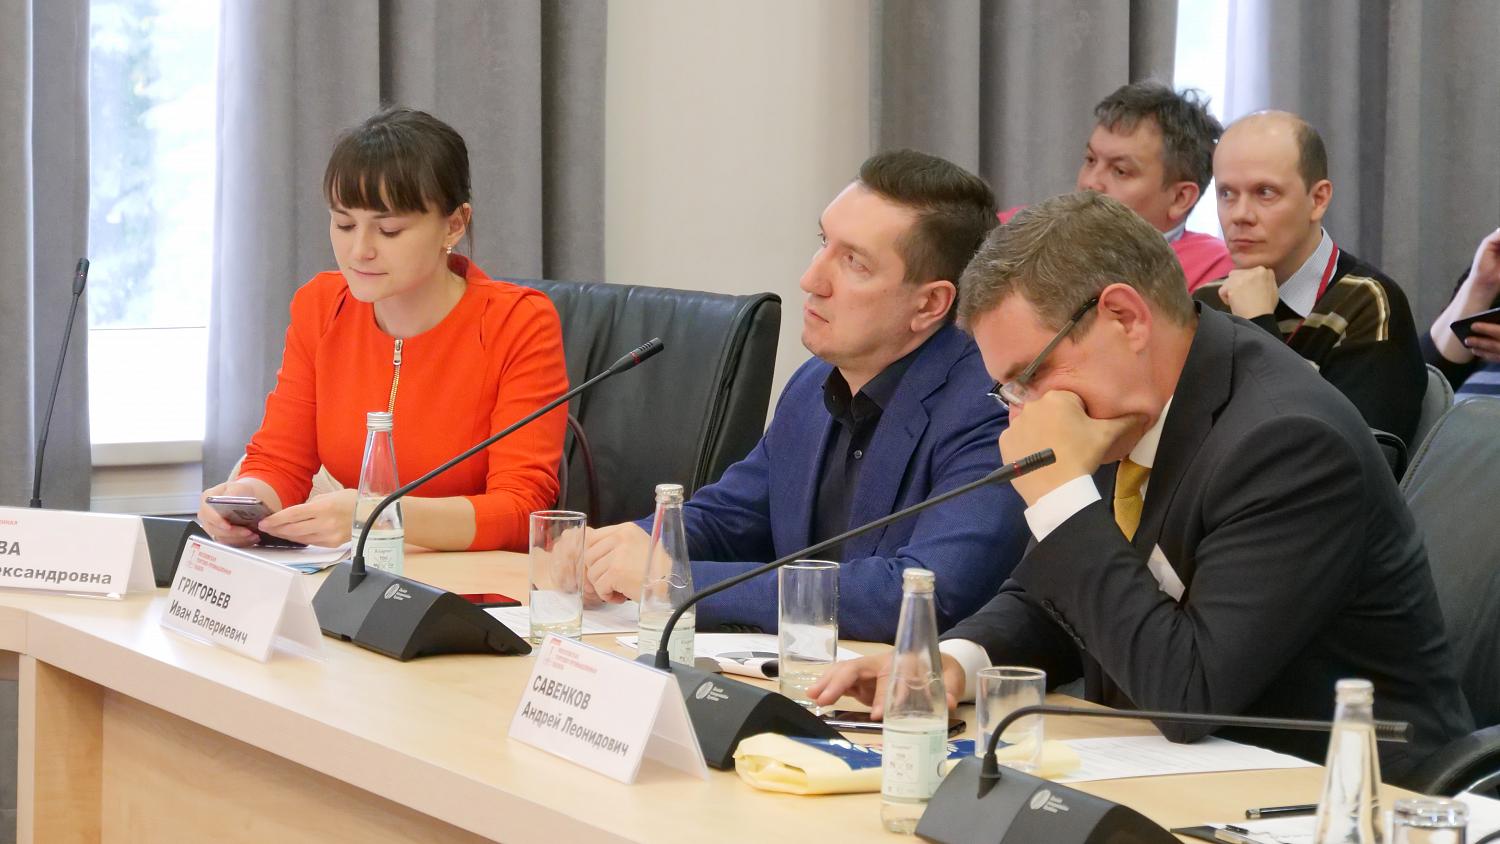 Перспективы реформирования оценочной деятельности в Российской Федерации обсудили на заседании Комитета МТПП по проблемам качества и развития деловых услуг